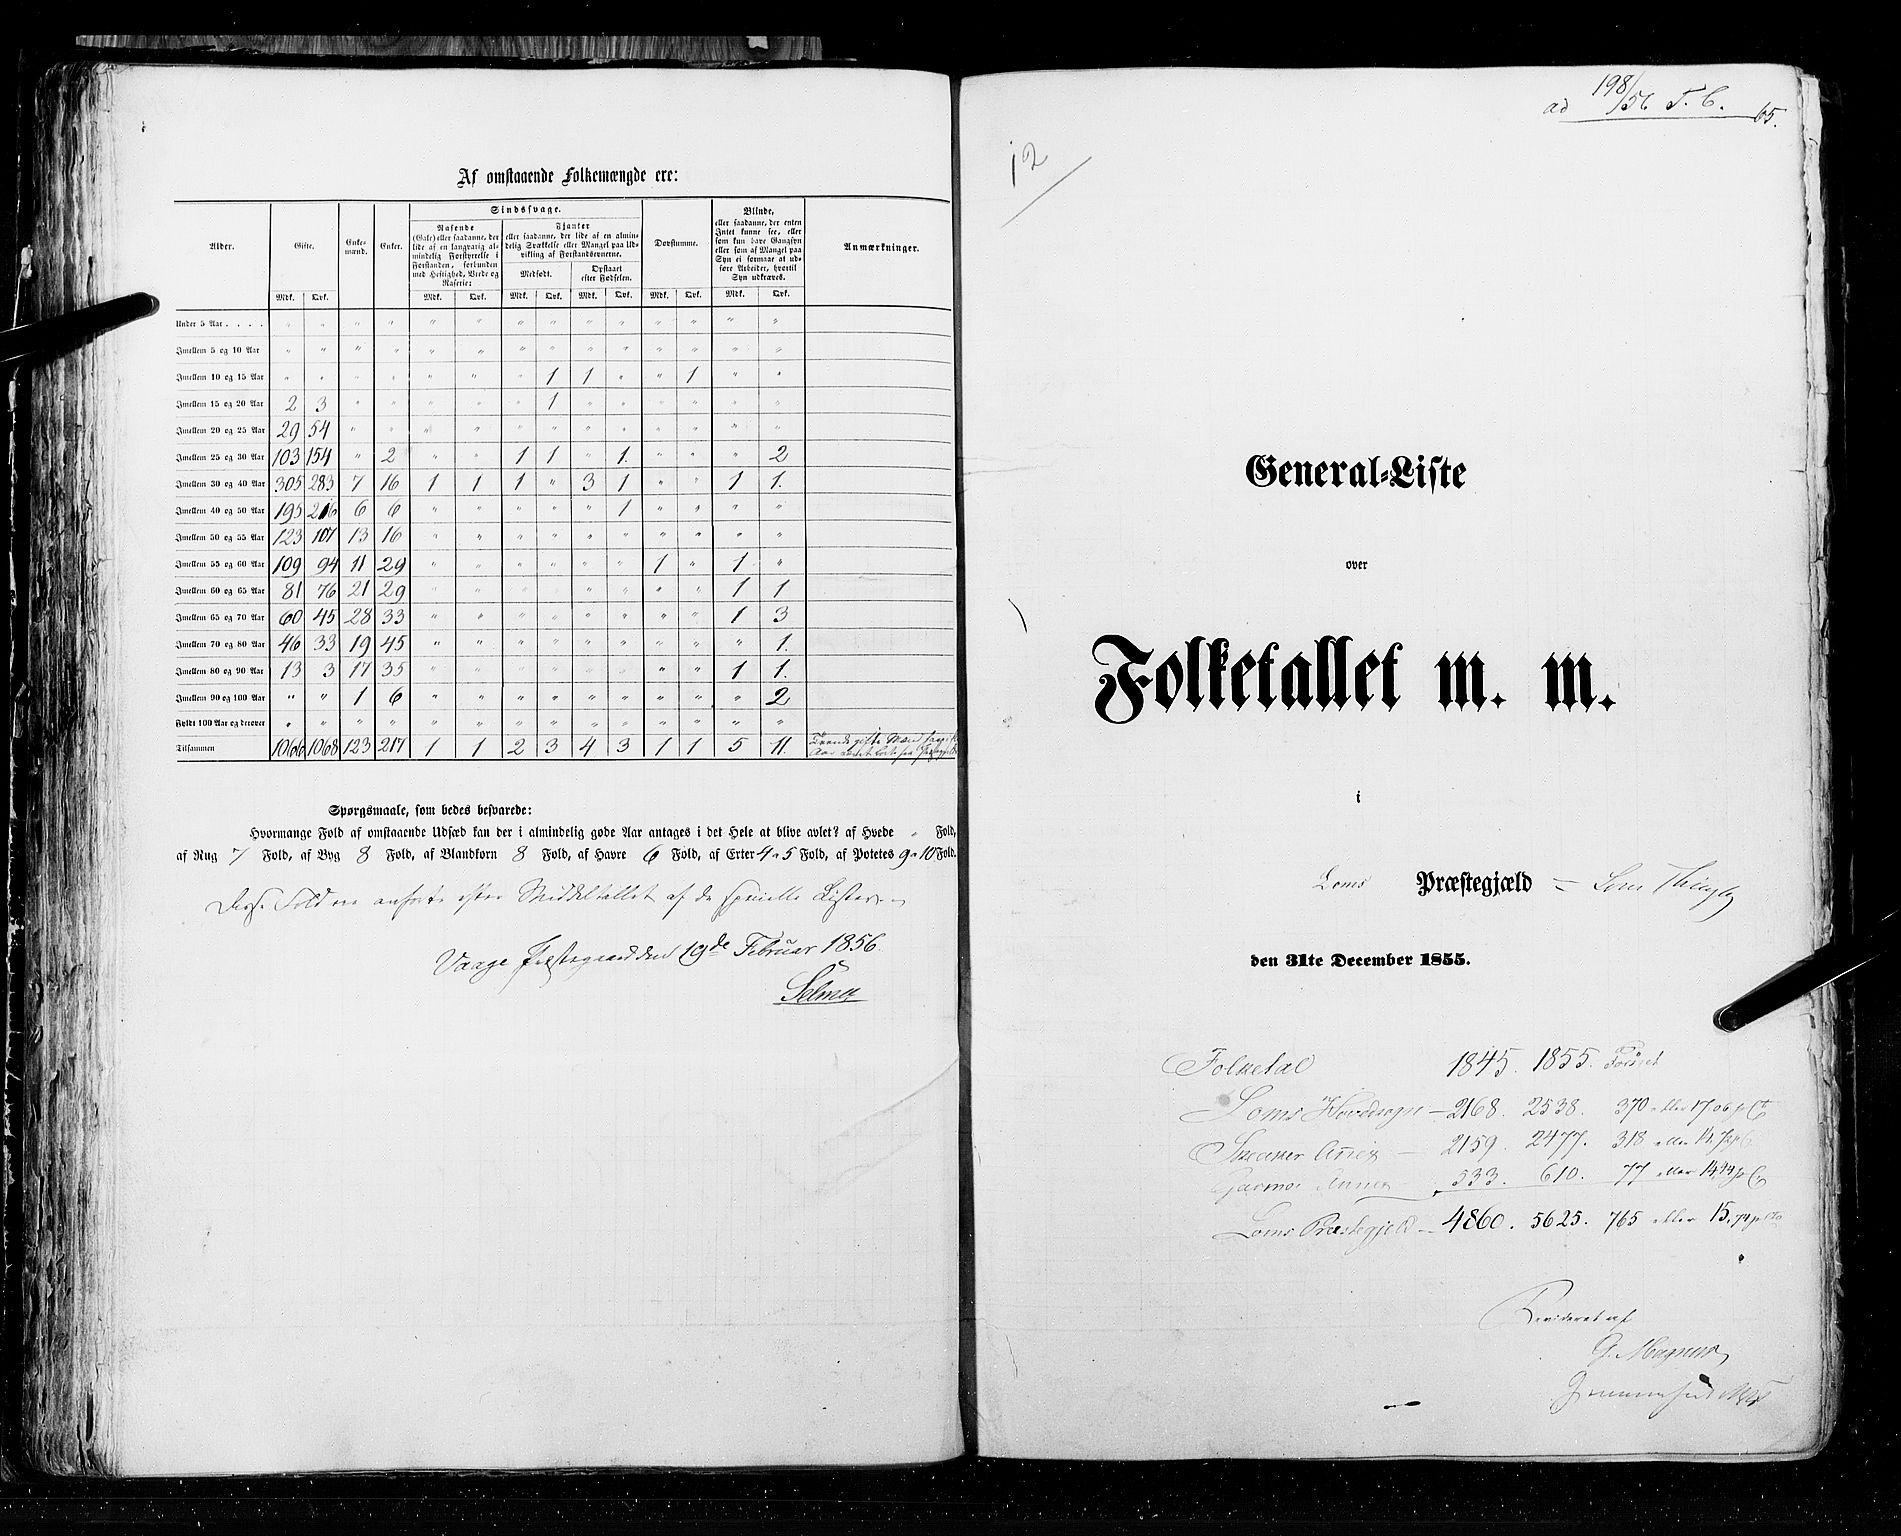 RA, Census 1855, vol. 2: Kristians amt, Buskerud amt og Jarlsberg og Larvik amt, 1855, p. 65